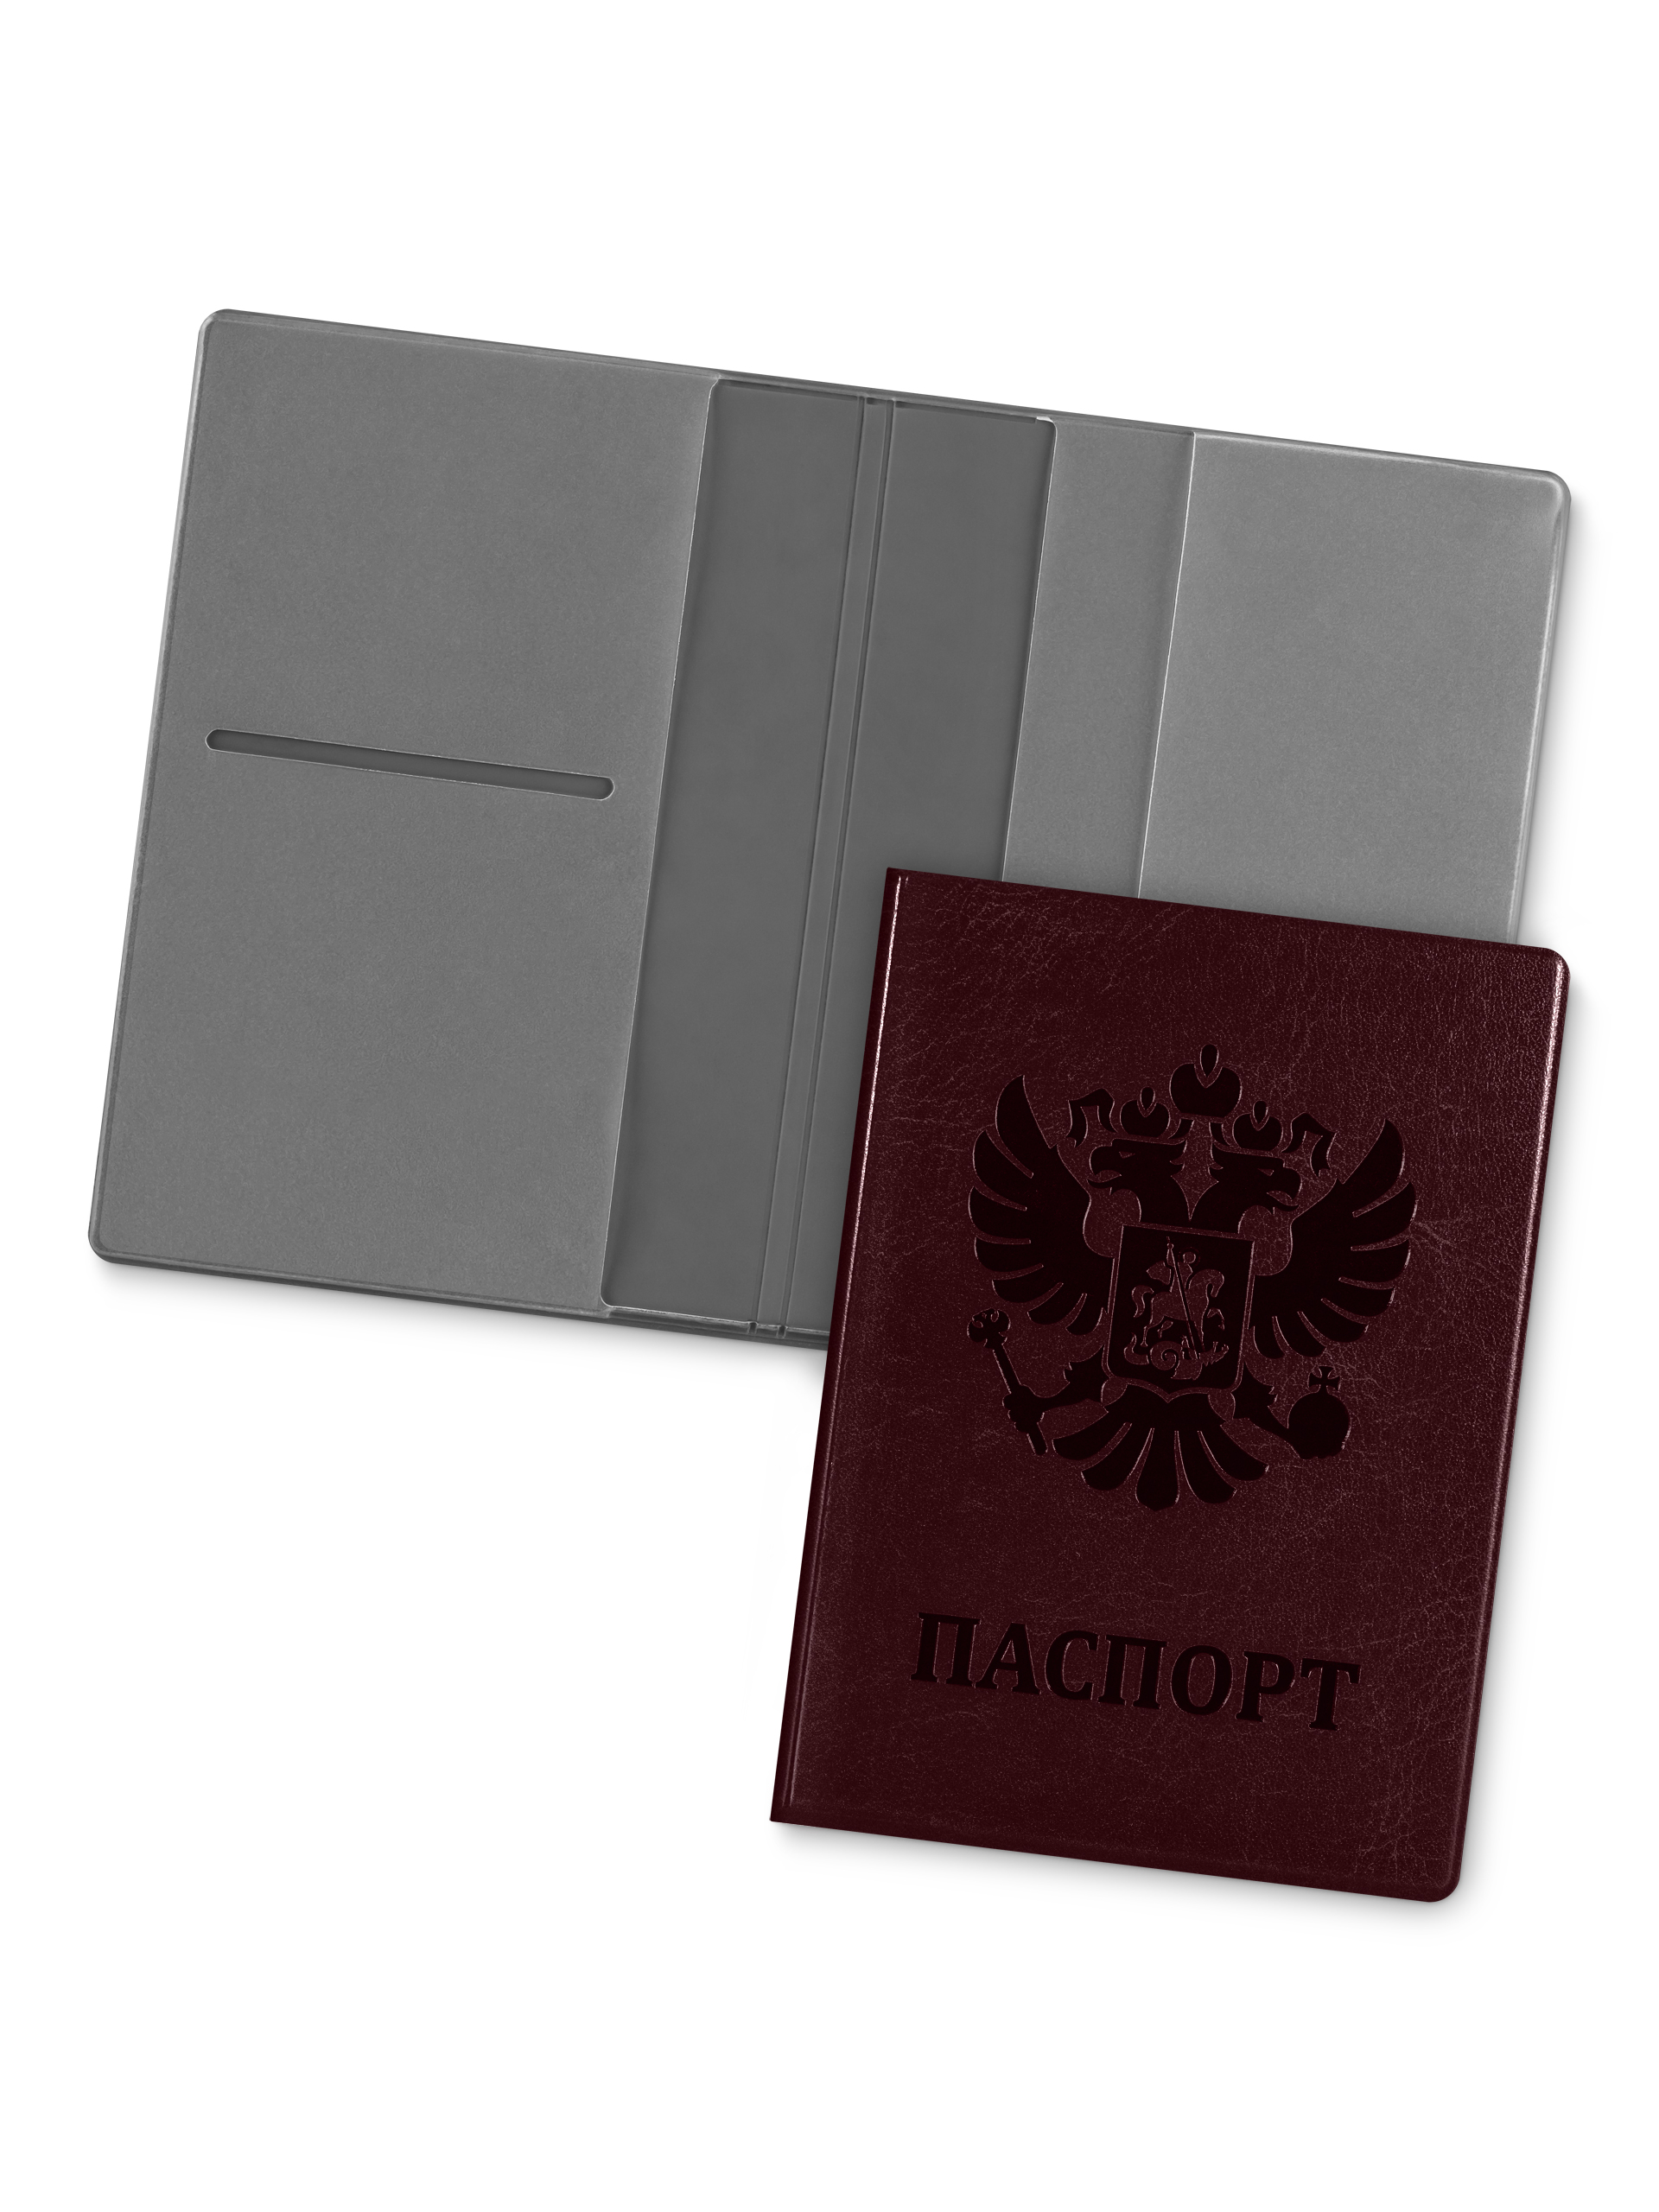 Обложка для паспорта унисекс Flexpocket KOP-05 коричневая